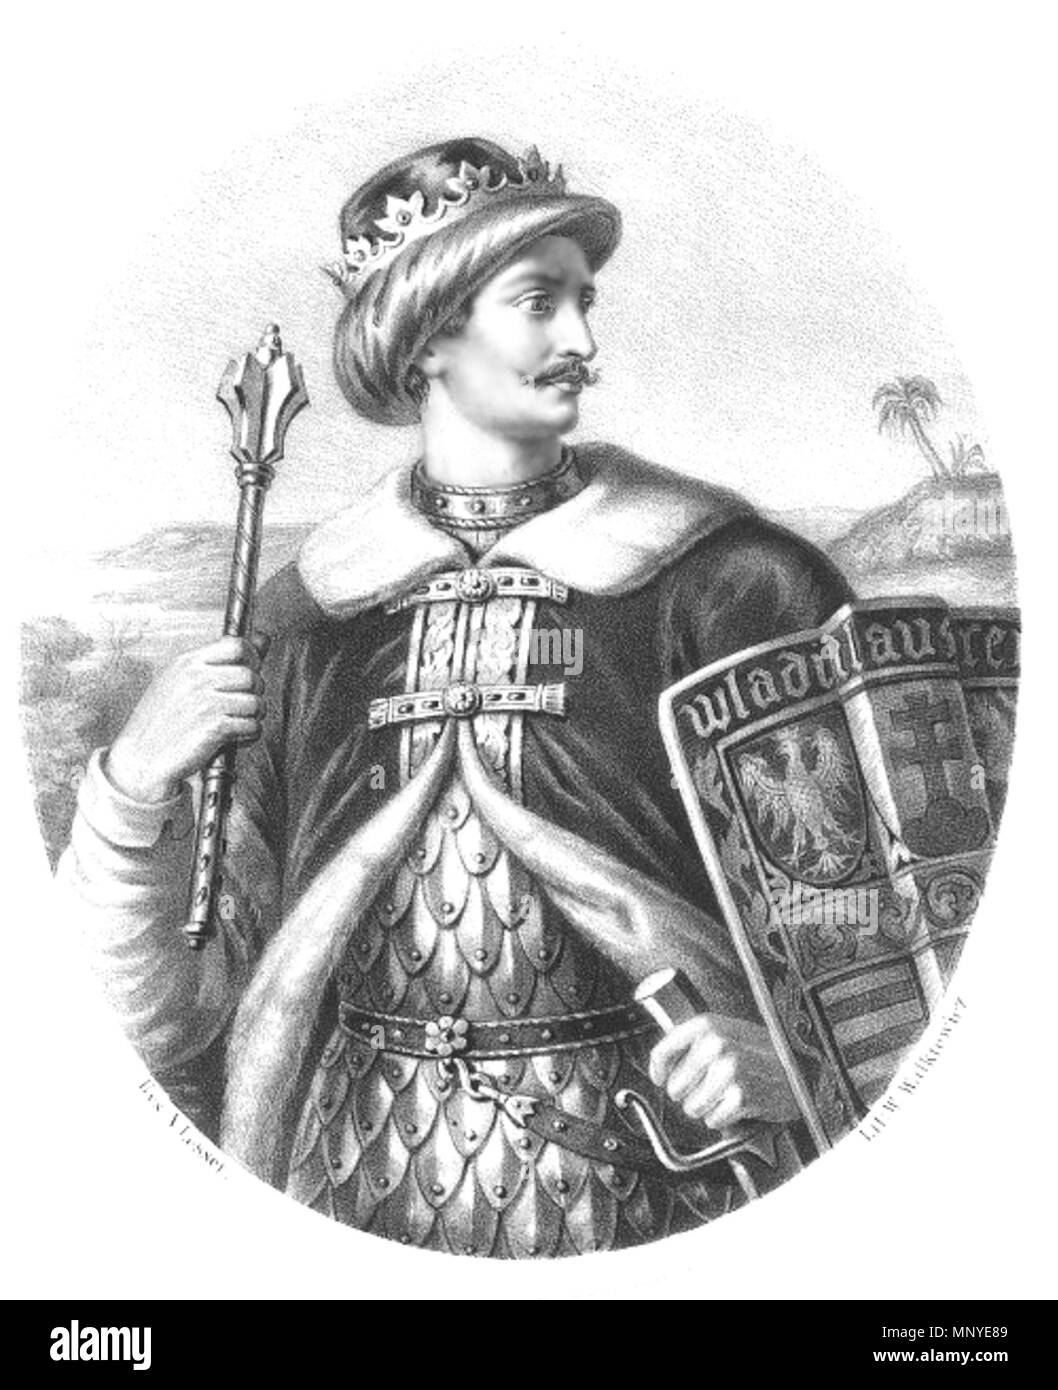 None 1275 Władysław III Warneńczyk by Aleksander Lesser Stock Photo